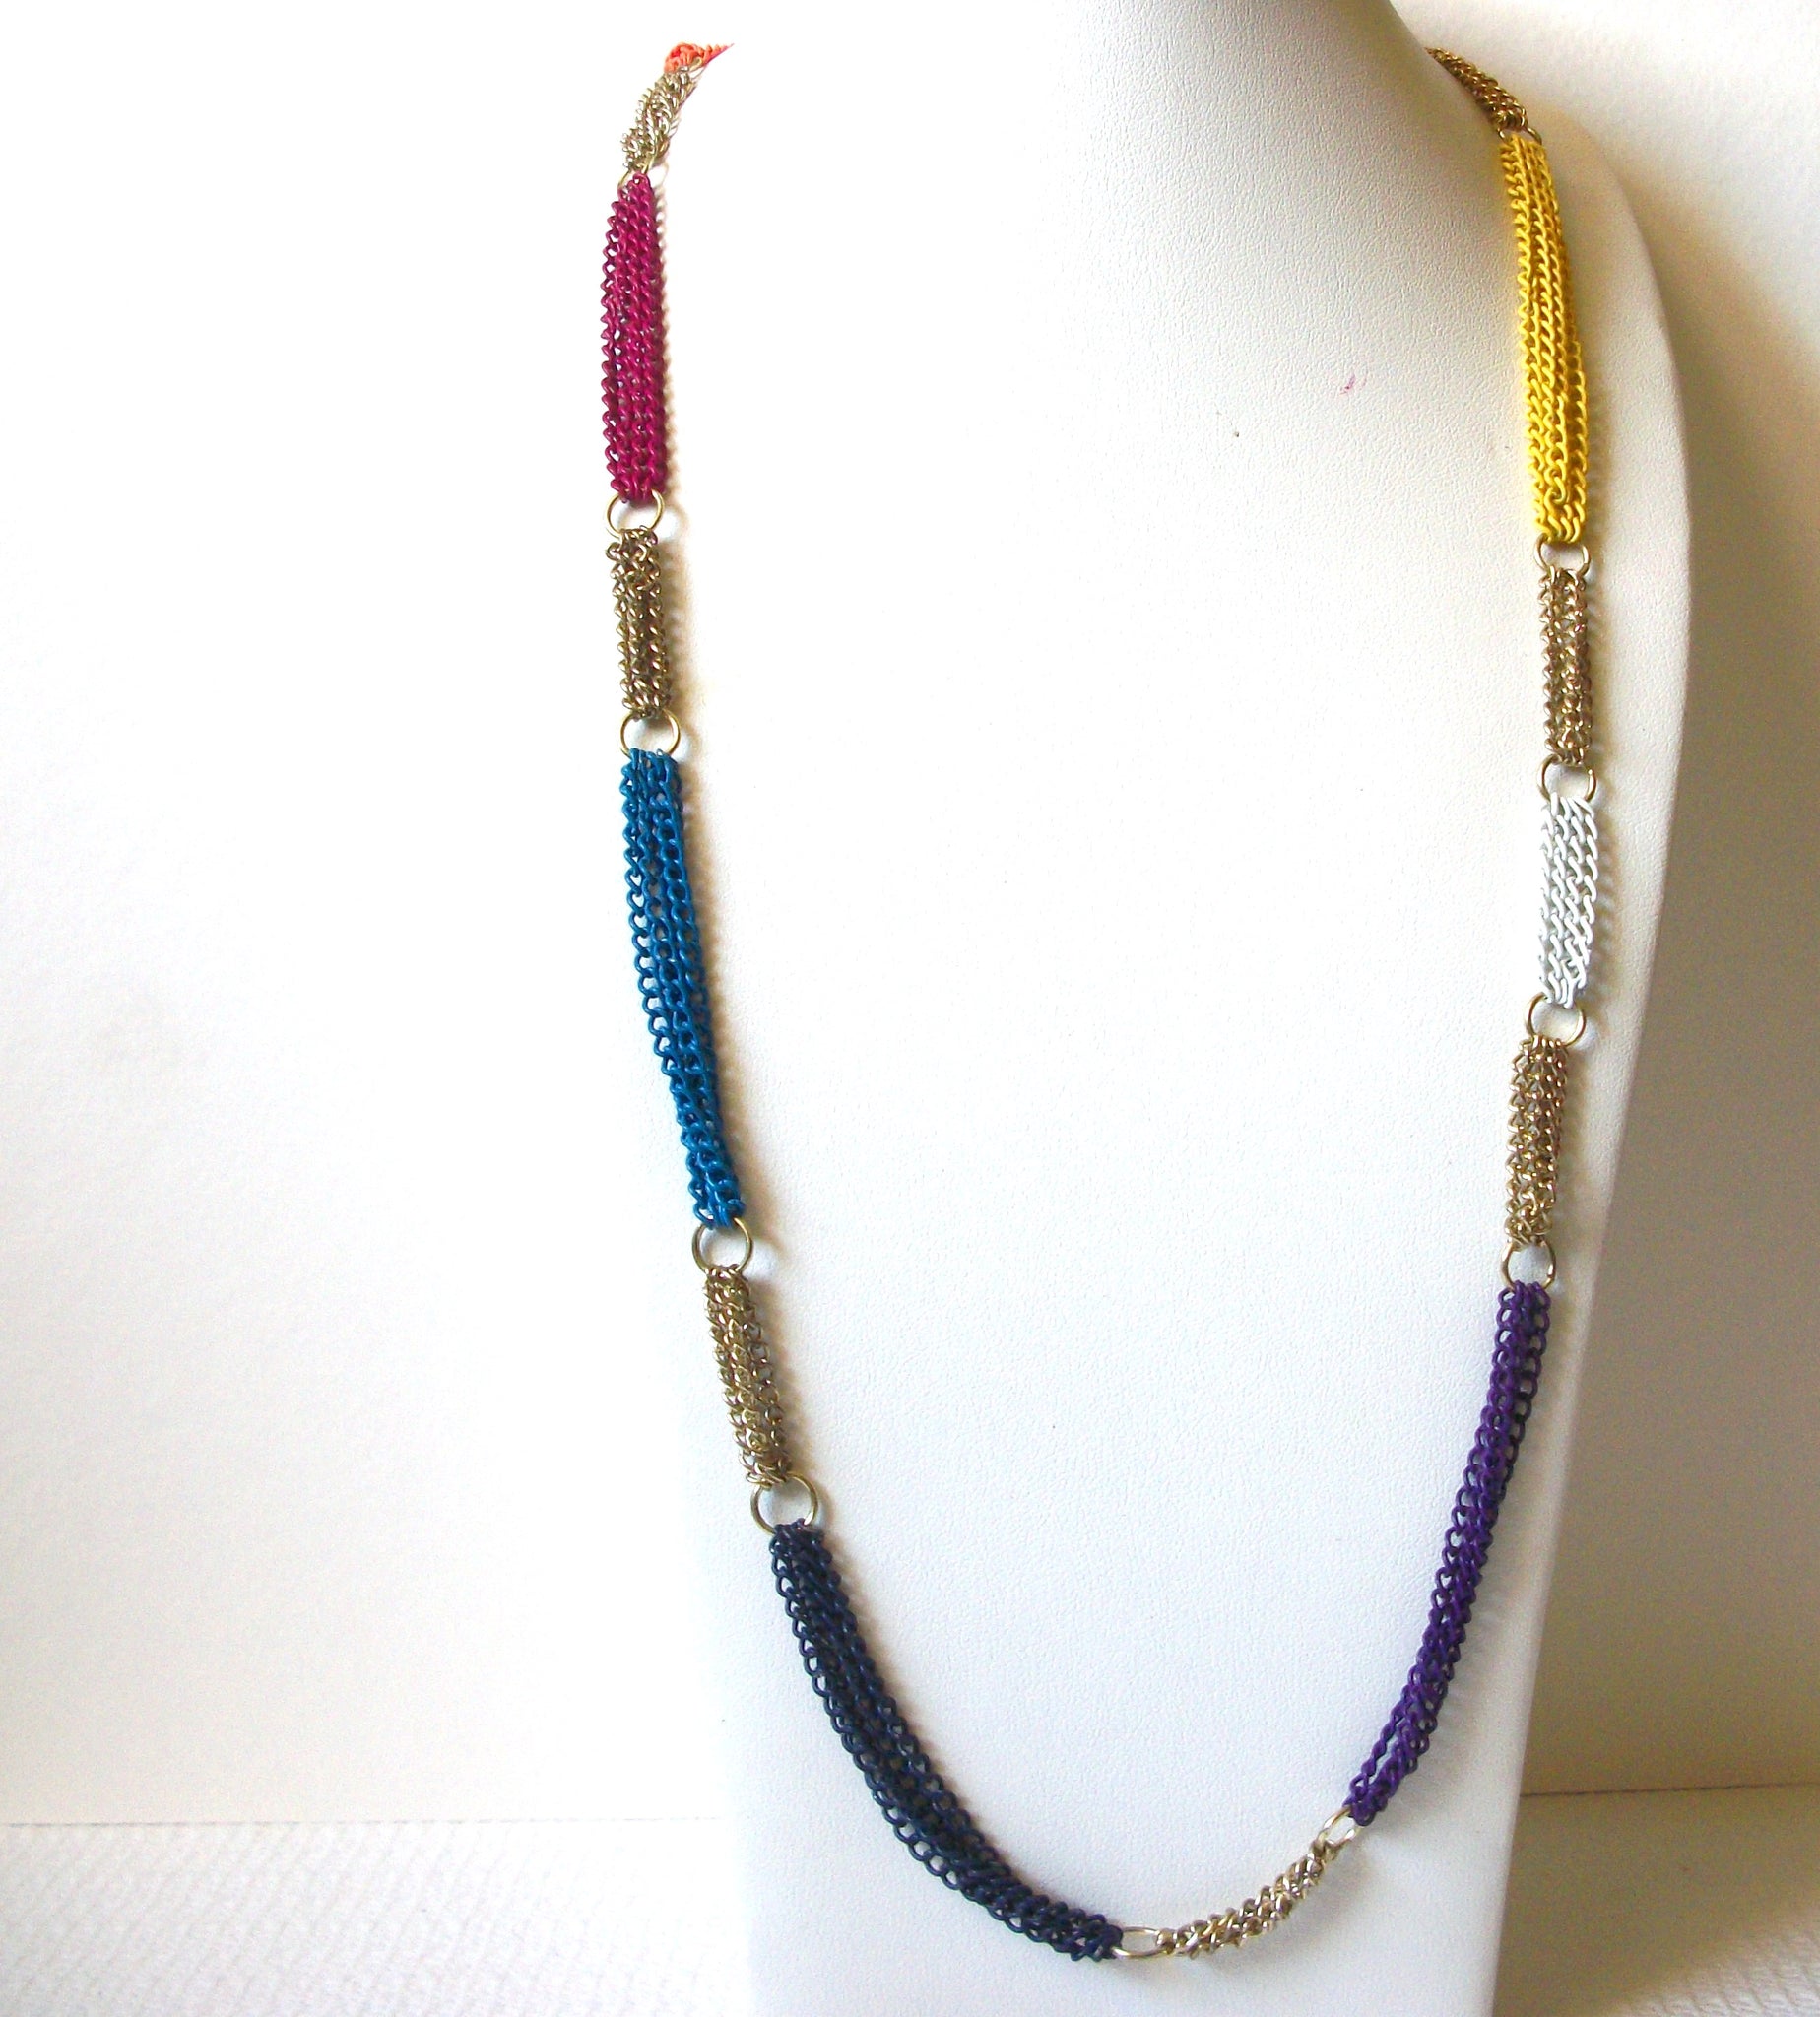 AERO Colorful Metal Necklace 92020